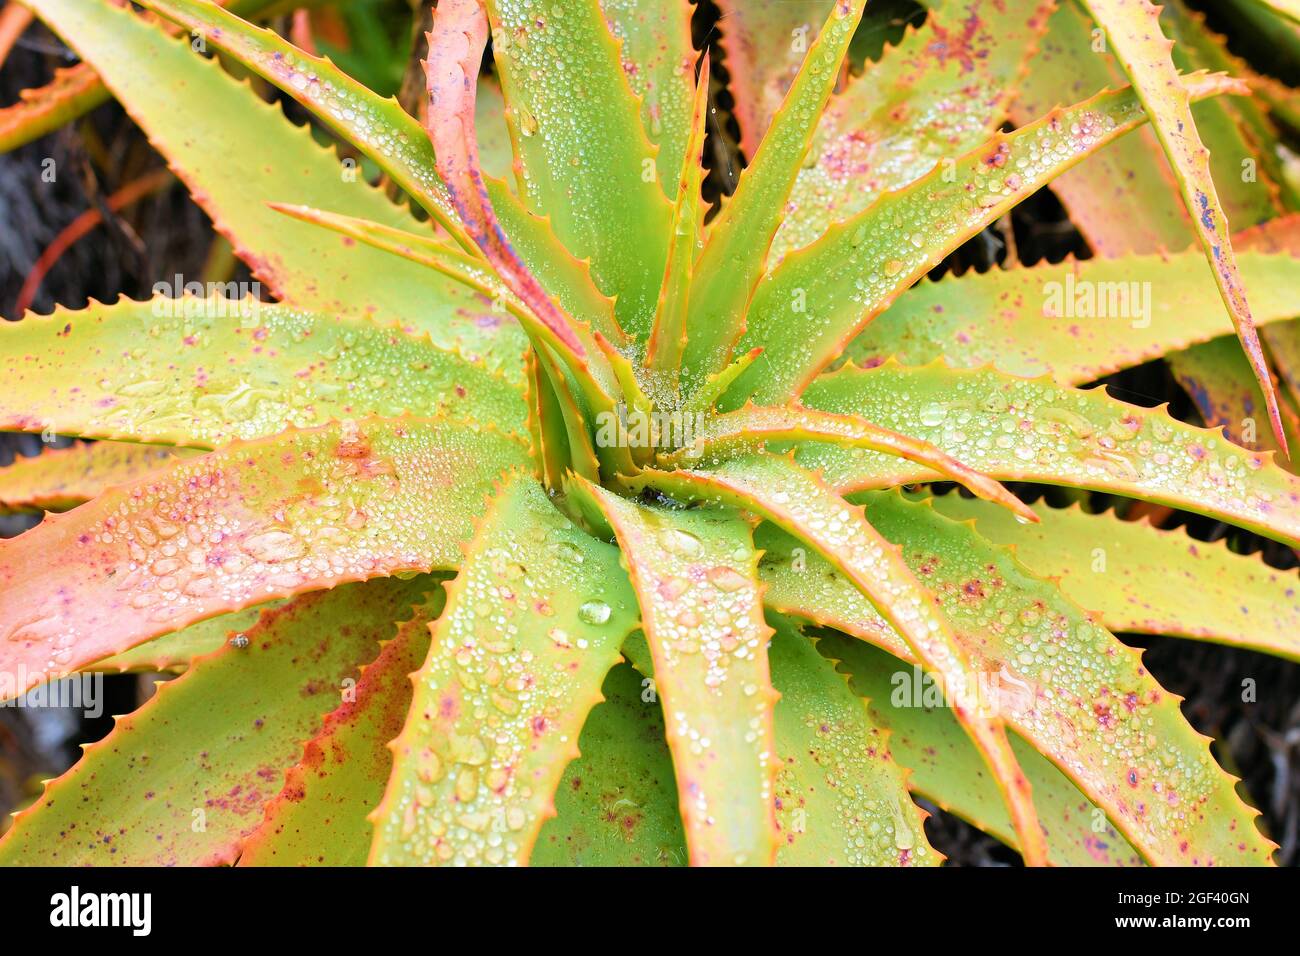 Aloe arborescens, krantz Aloe oder Candelabra Aloe; ausdauernde Sukulente; San Francisco, Kalifornien; mit Morgentautropfen oder tröpfchendem Wasser. Stockfoto